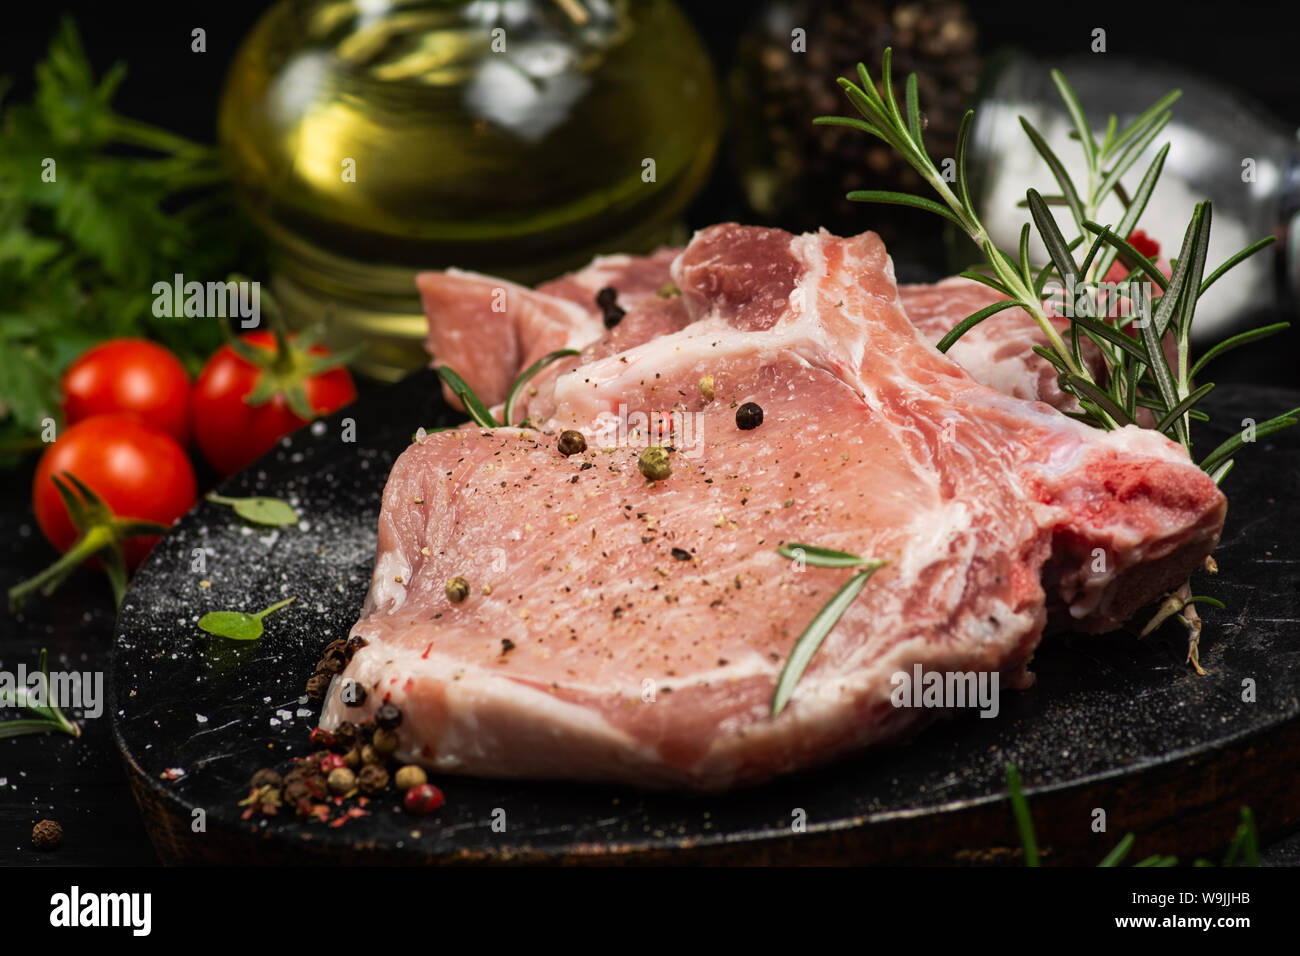 Cierre de un filete de carne roja cruda listos para ser cocinados Foto de stock